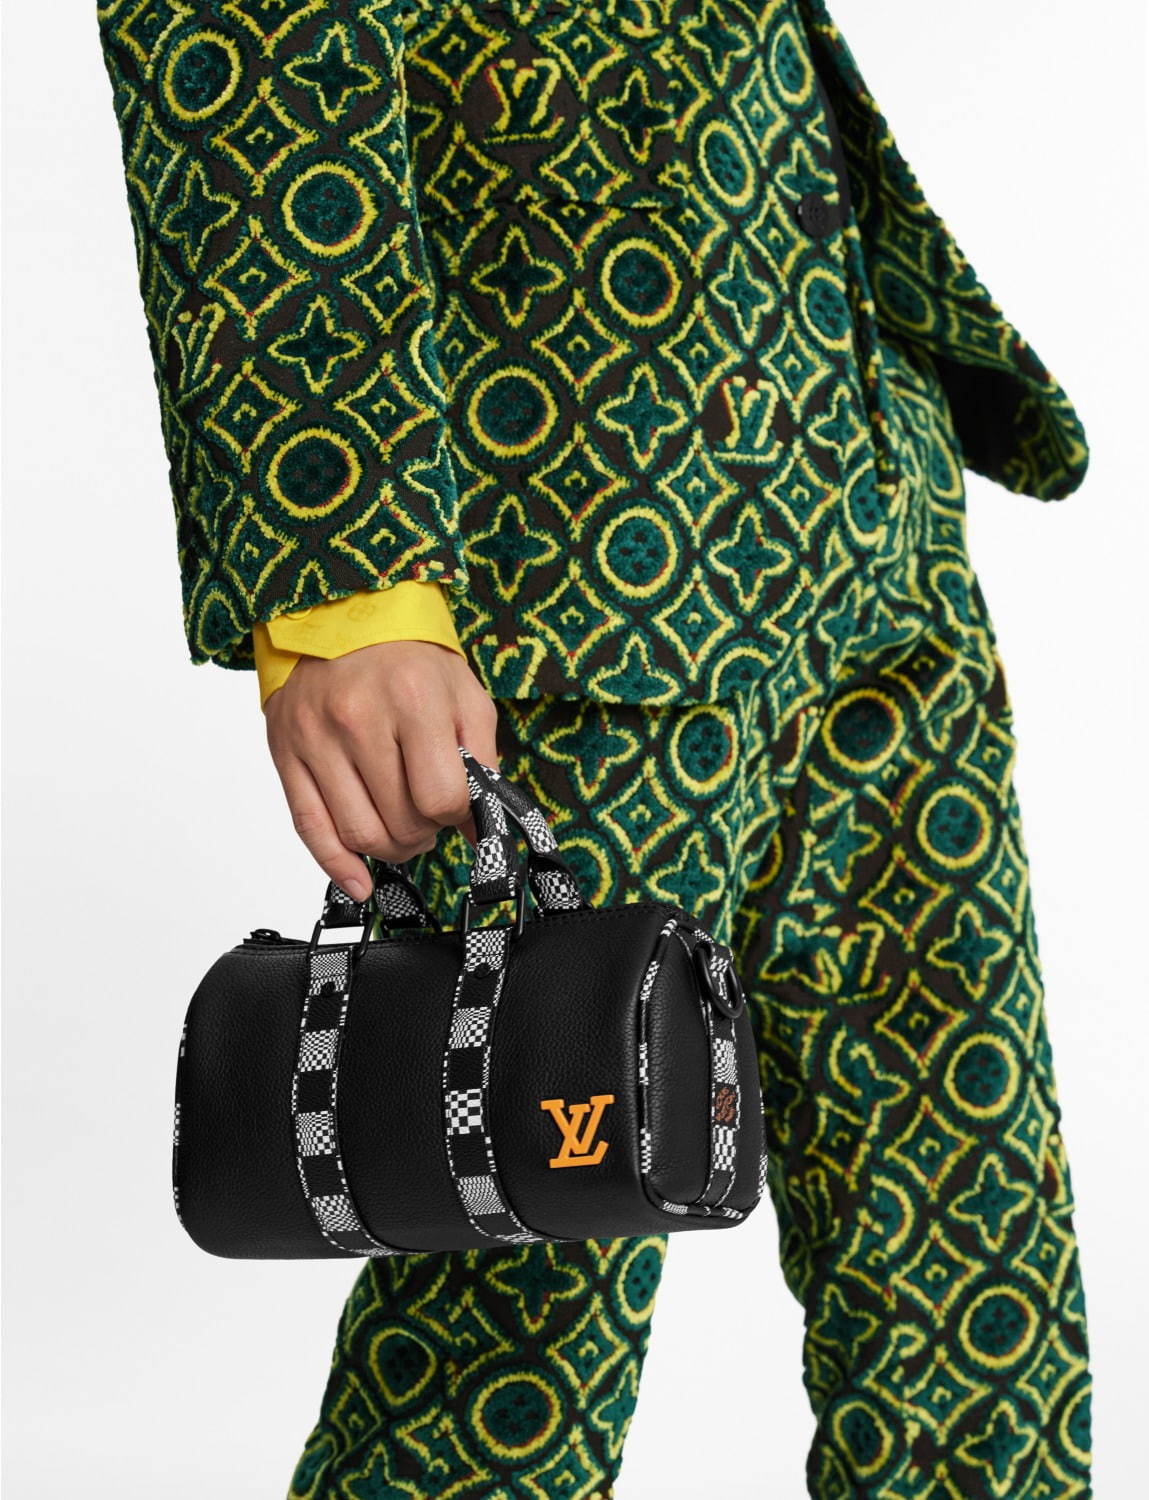 ルイ・ヴィトン“XSサイズ”新作ミニバッグ、ニットマスコットや“スカ”音楽着想のダミエ・パターン - ファッションプレス